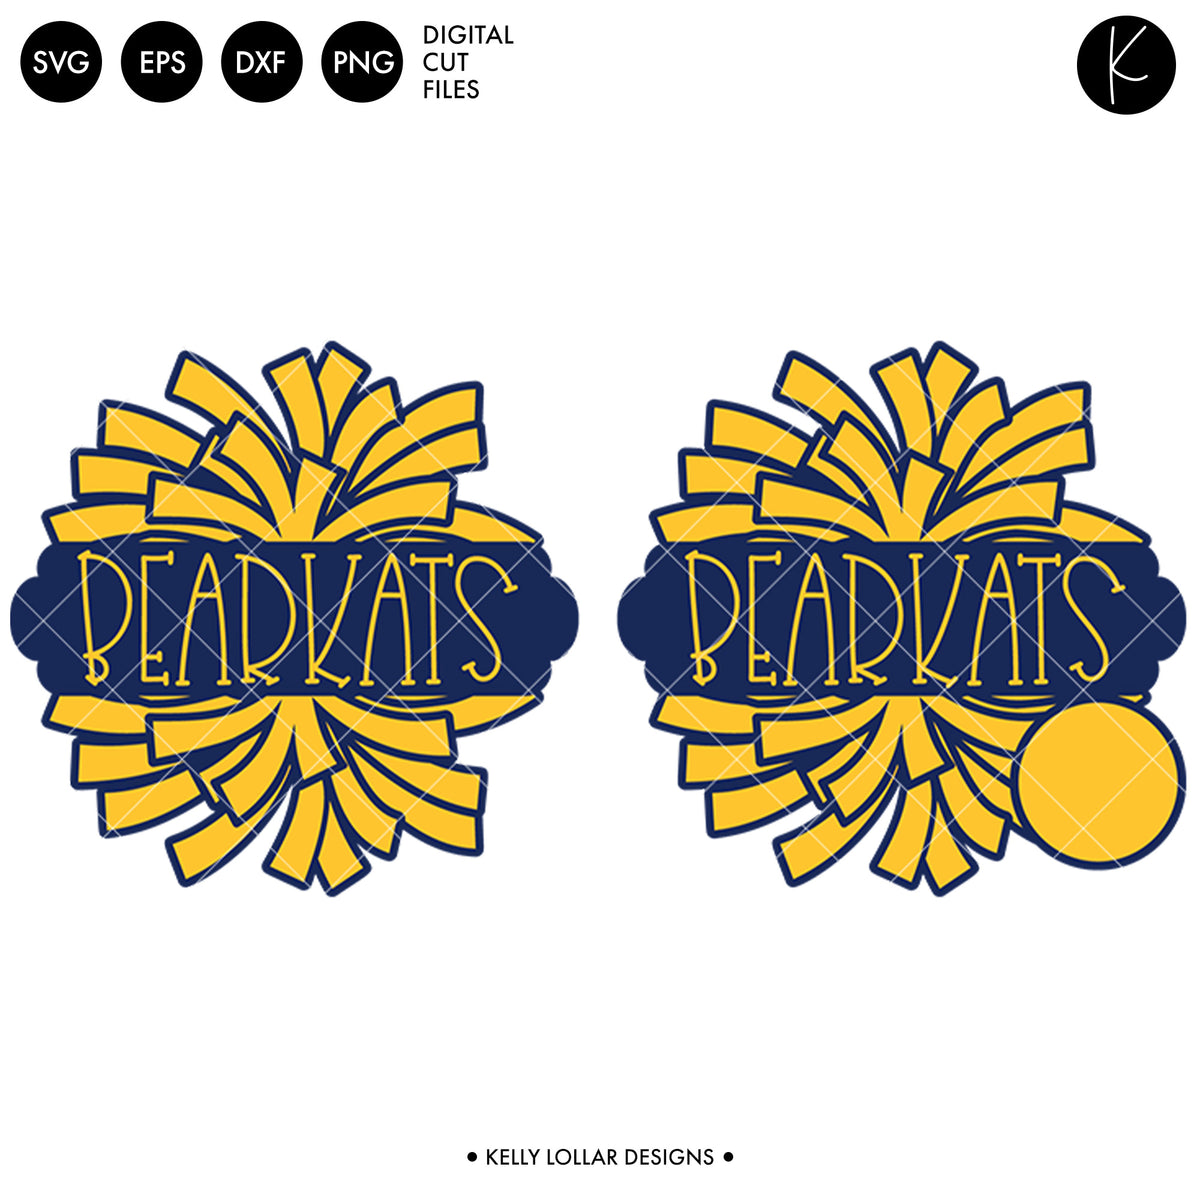 Bearkats Dance Bundle | SVG DXF EPS PNG Cut Files